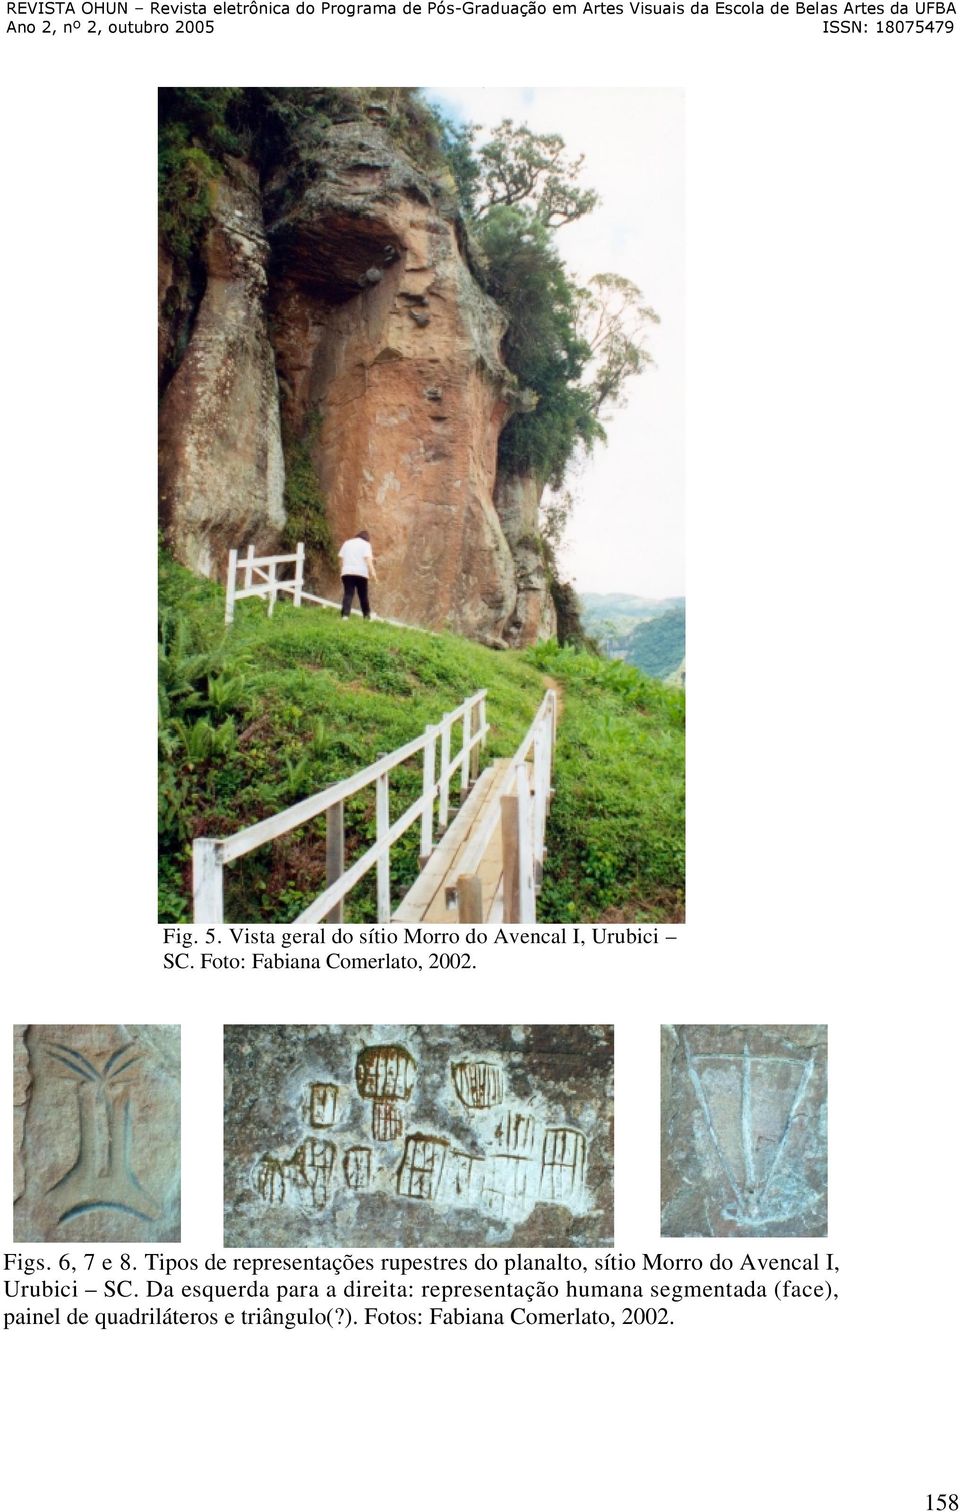 Tipos de representações rupestres do planalto, sítio Morro do Avencal I, Urubici SC.